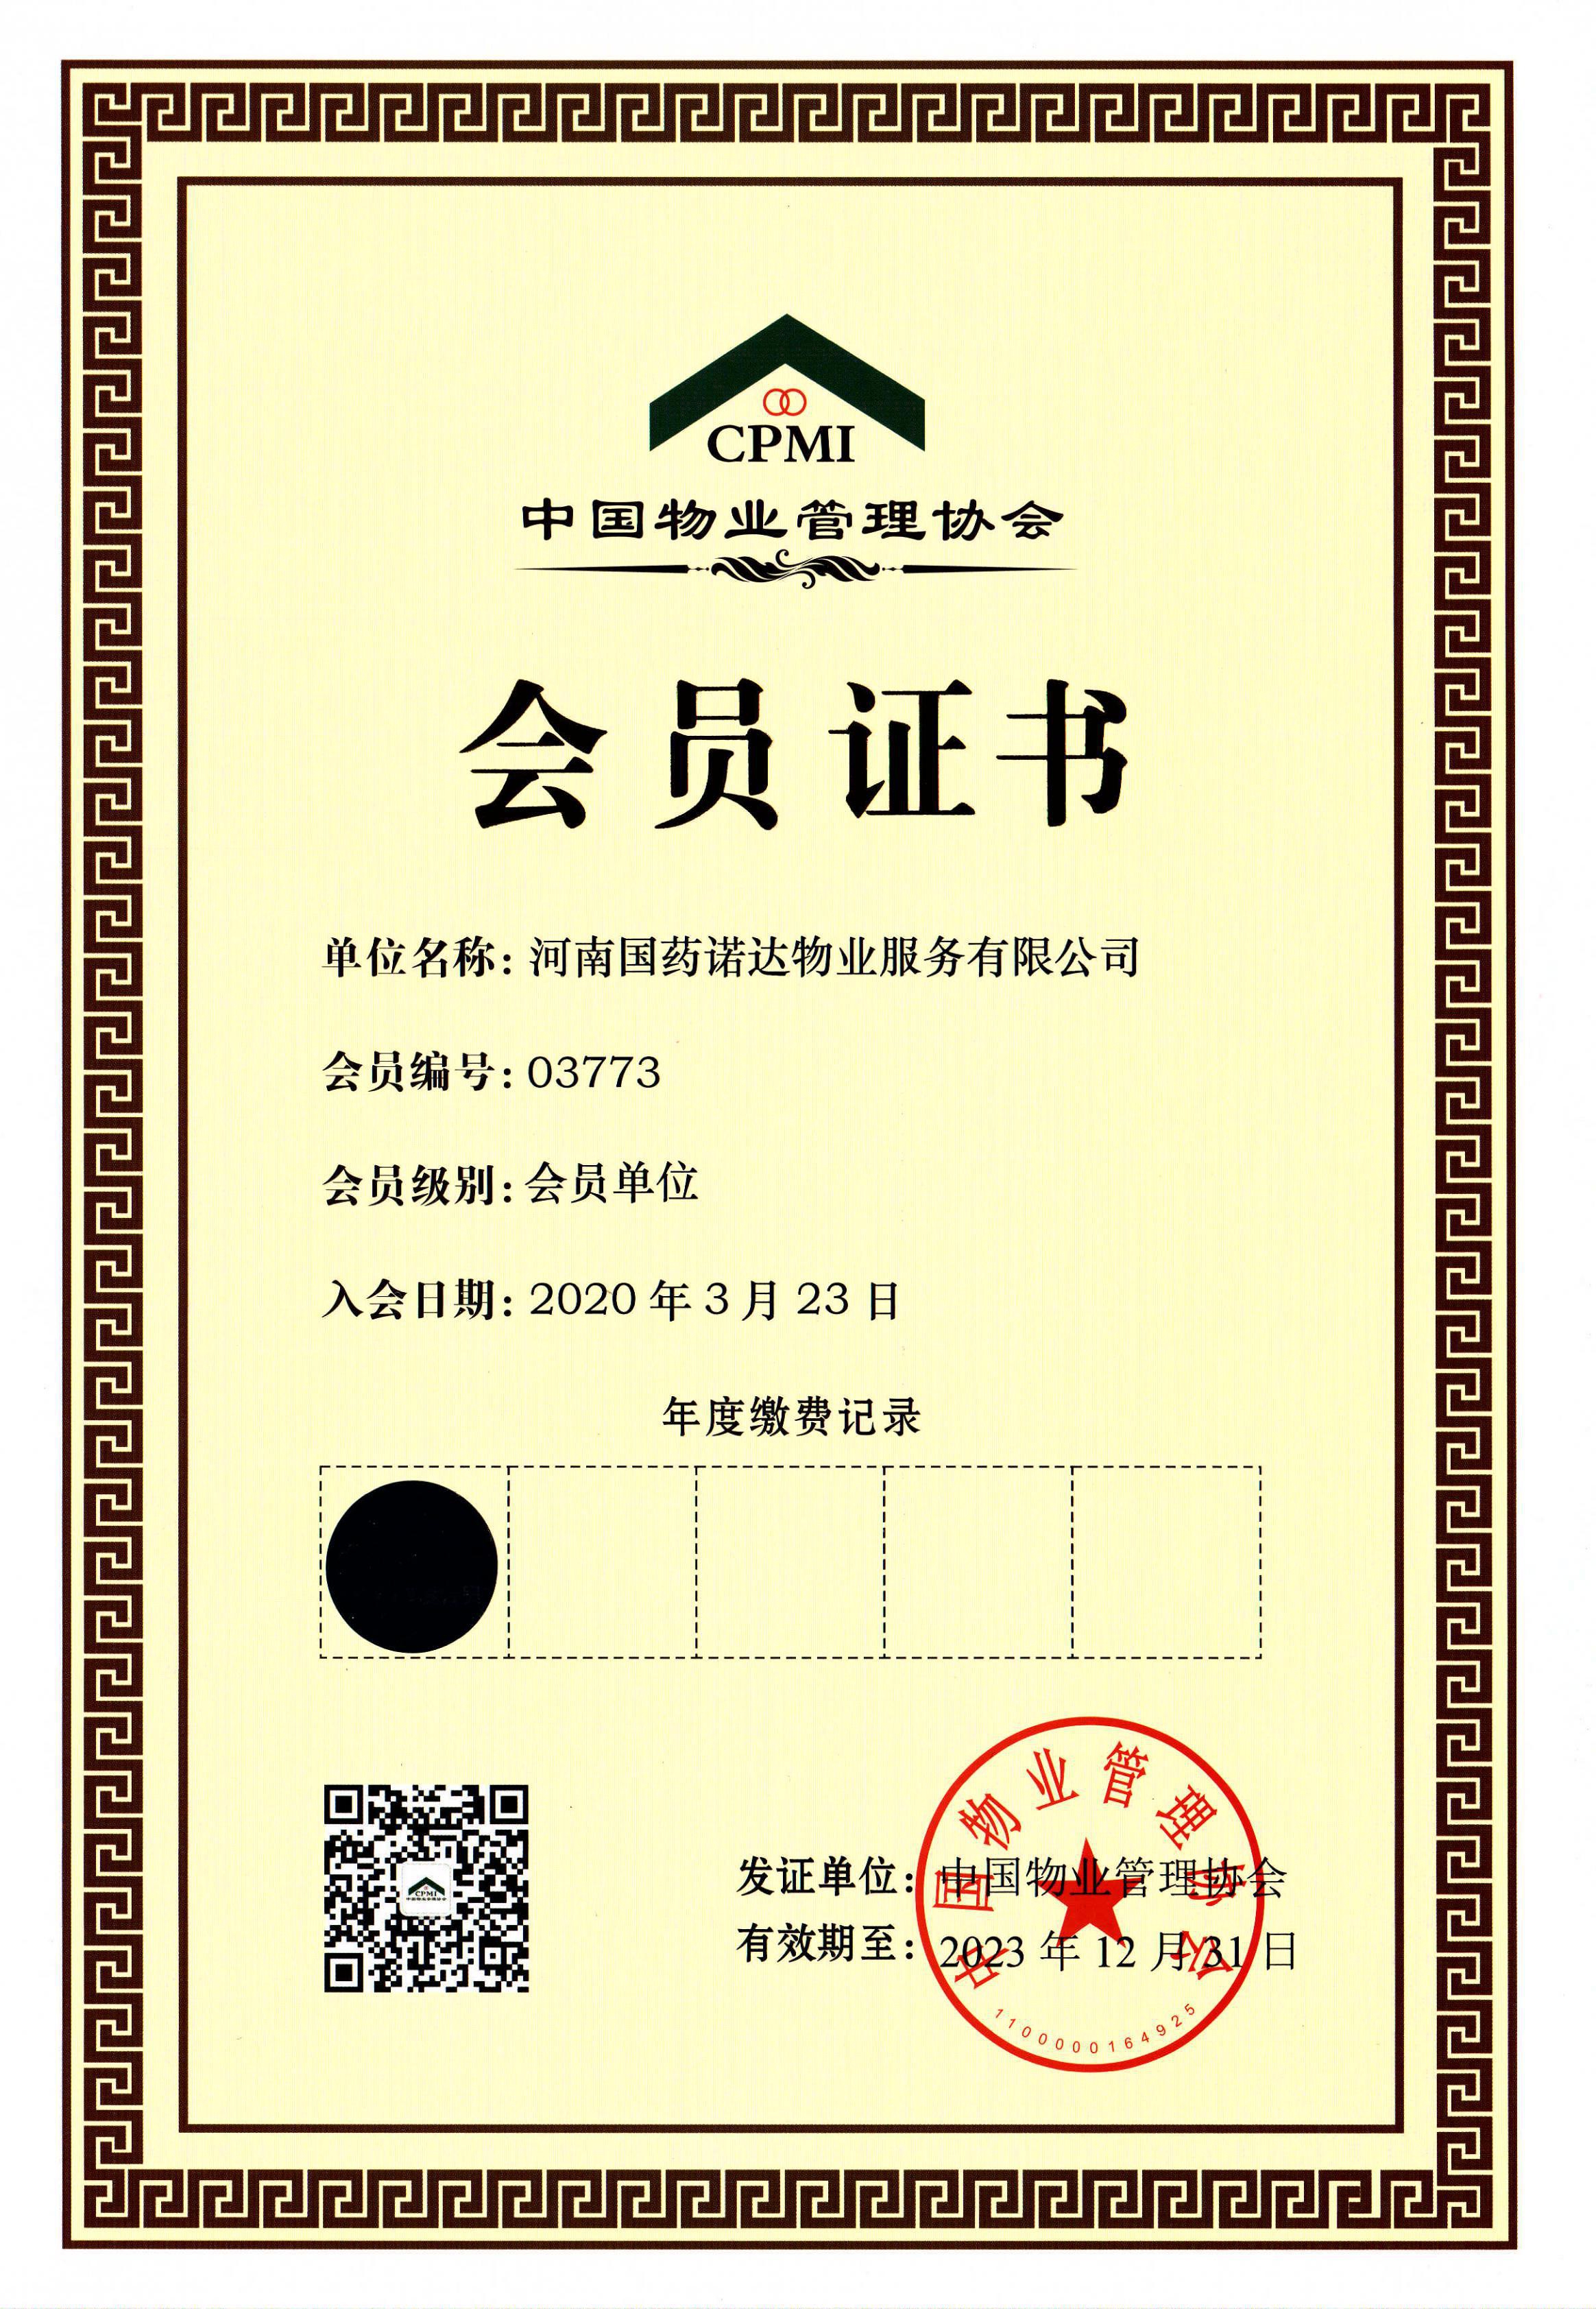 中国物业协会会员单位